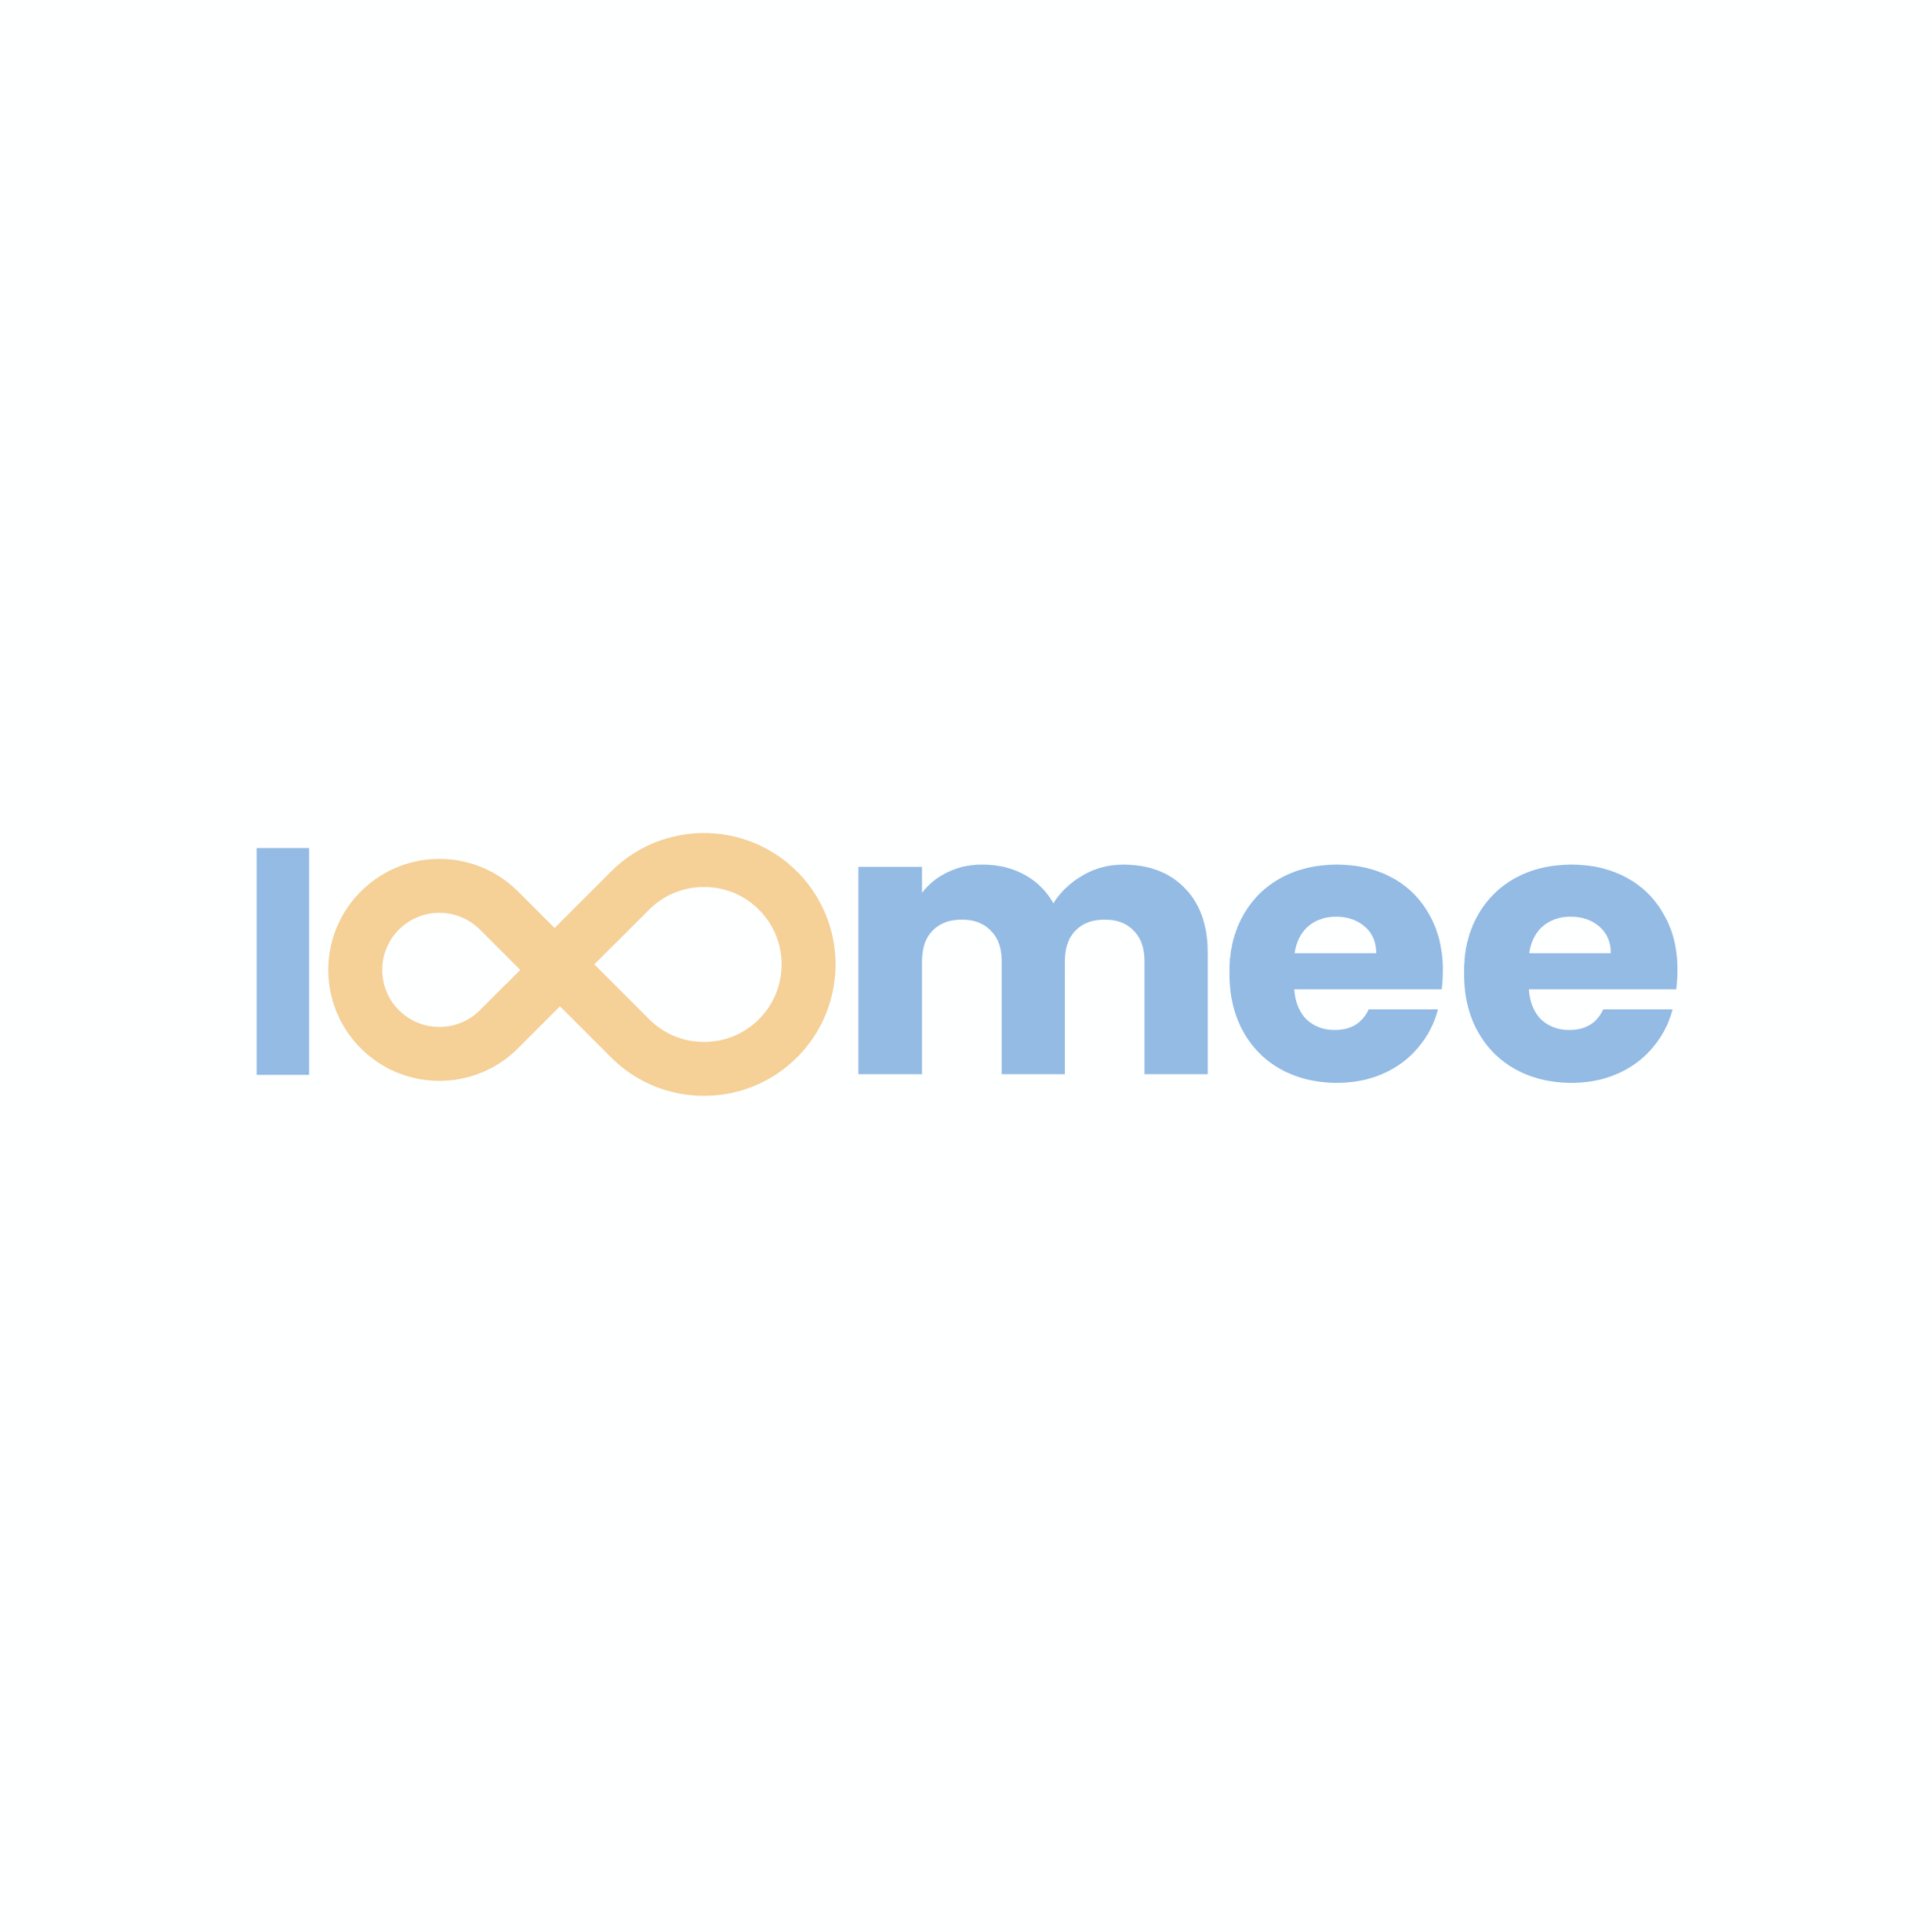 Loomee-logo